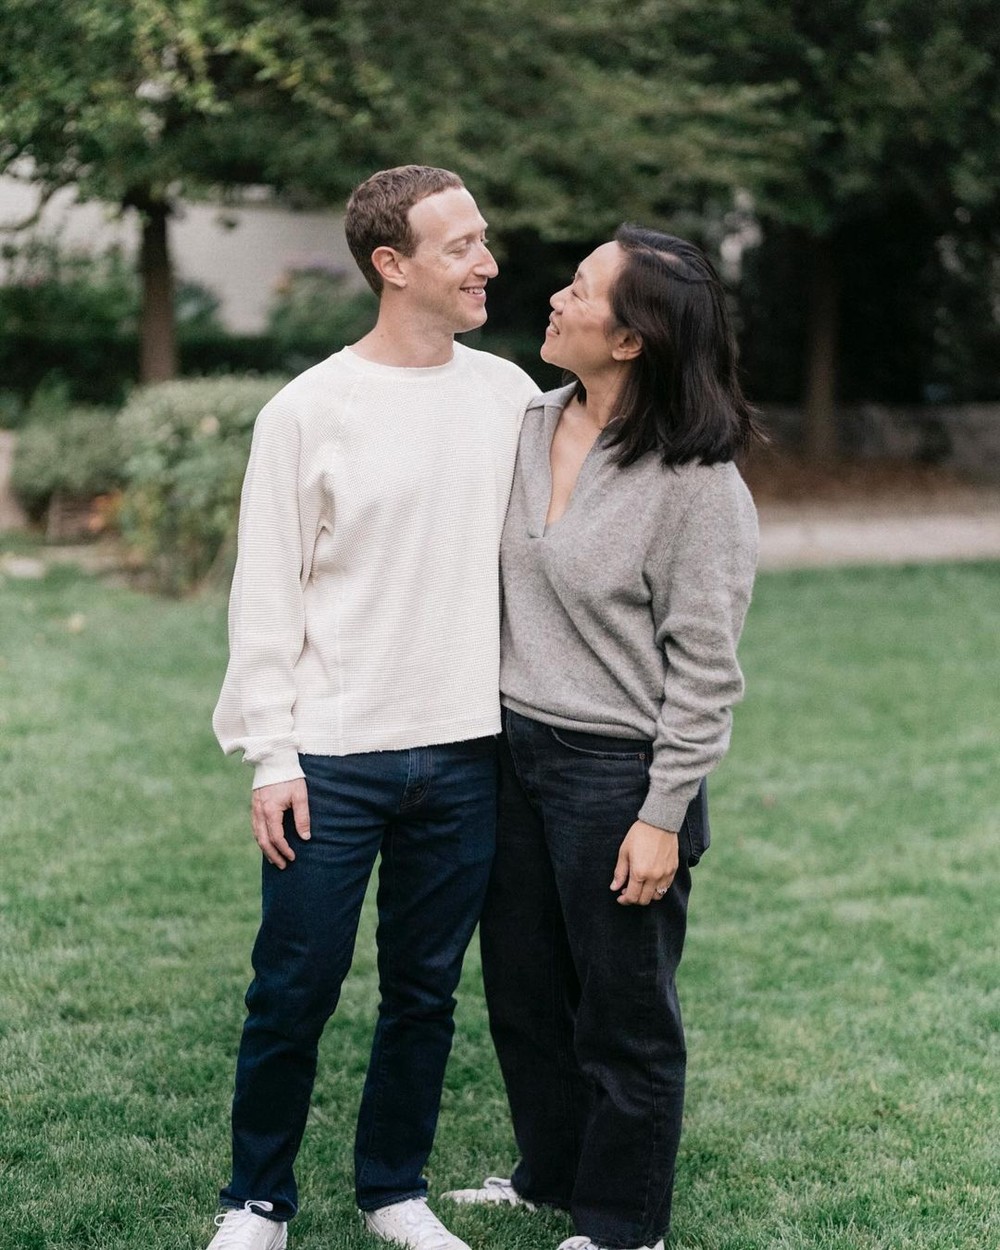 Vợ chồng Mark Zuckerberg quen nhau từ 2003, kết hôn vào năm 2012. Bà xã Priscilla Chan là người khiêm tốn, sống giản dị, luôn đứng sau thành công của chồng, tạo nên một trong những mối tình đẹp nhất Thung lũng Silicon và trong giới công nghệ. Ở đời thường, Chan và Mark cũng đều chọn trang phục đồng điệu như cách để thể hiện tình cảm dành cho nhau.